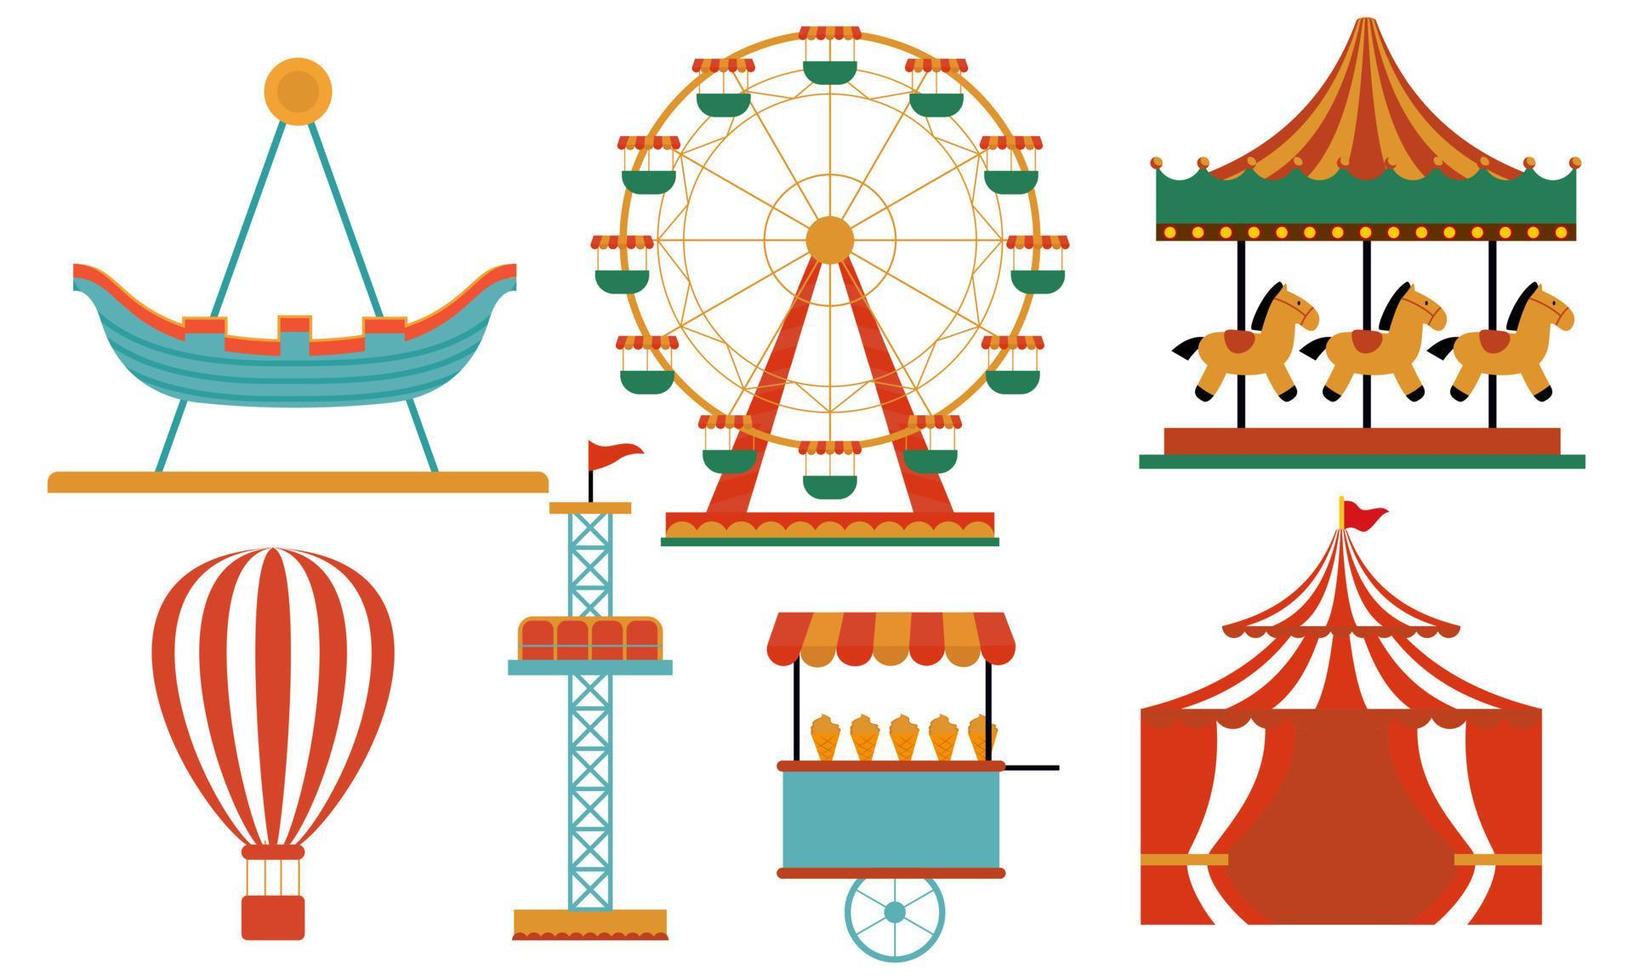 atrações do parque de diversões. carrossel infantil de carnaval, atração de roda gigante e parque de diversões divertido e vetor